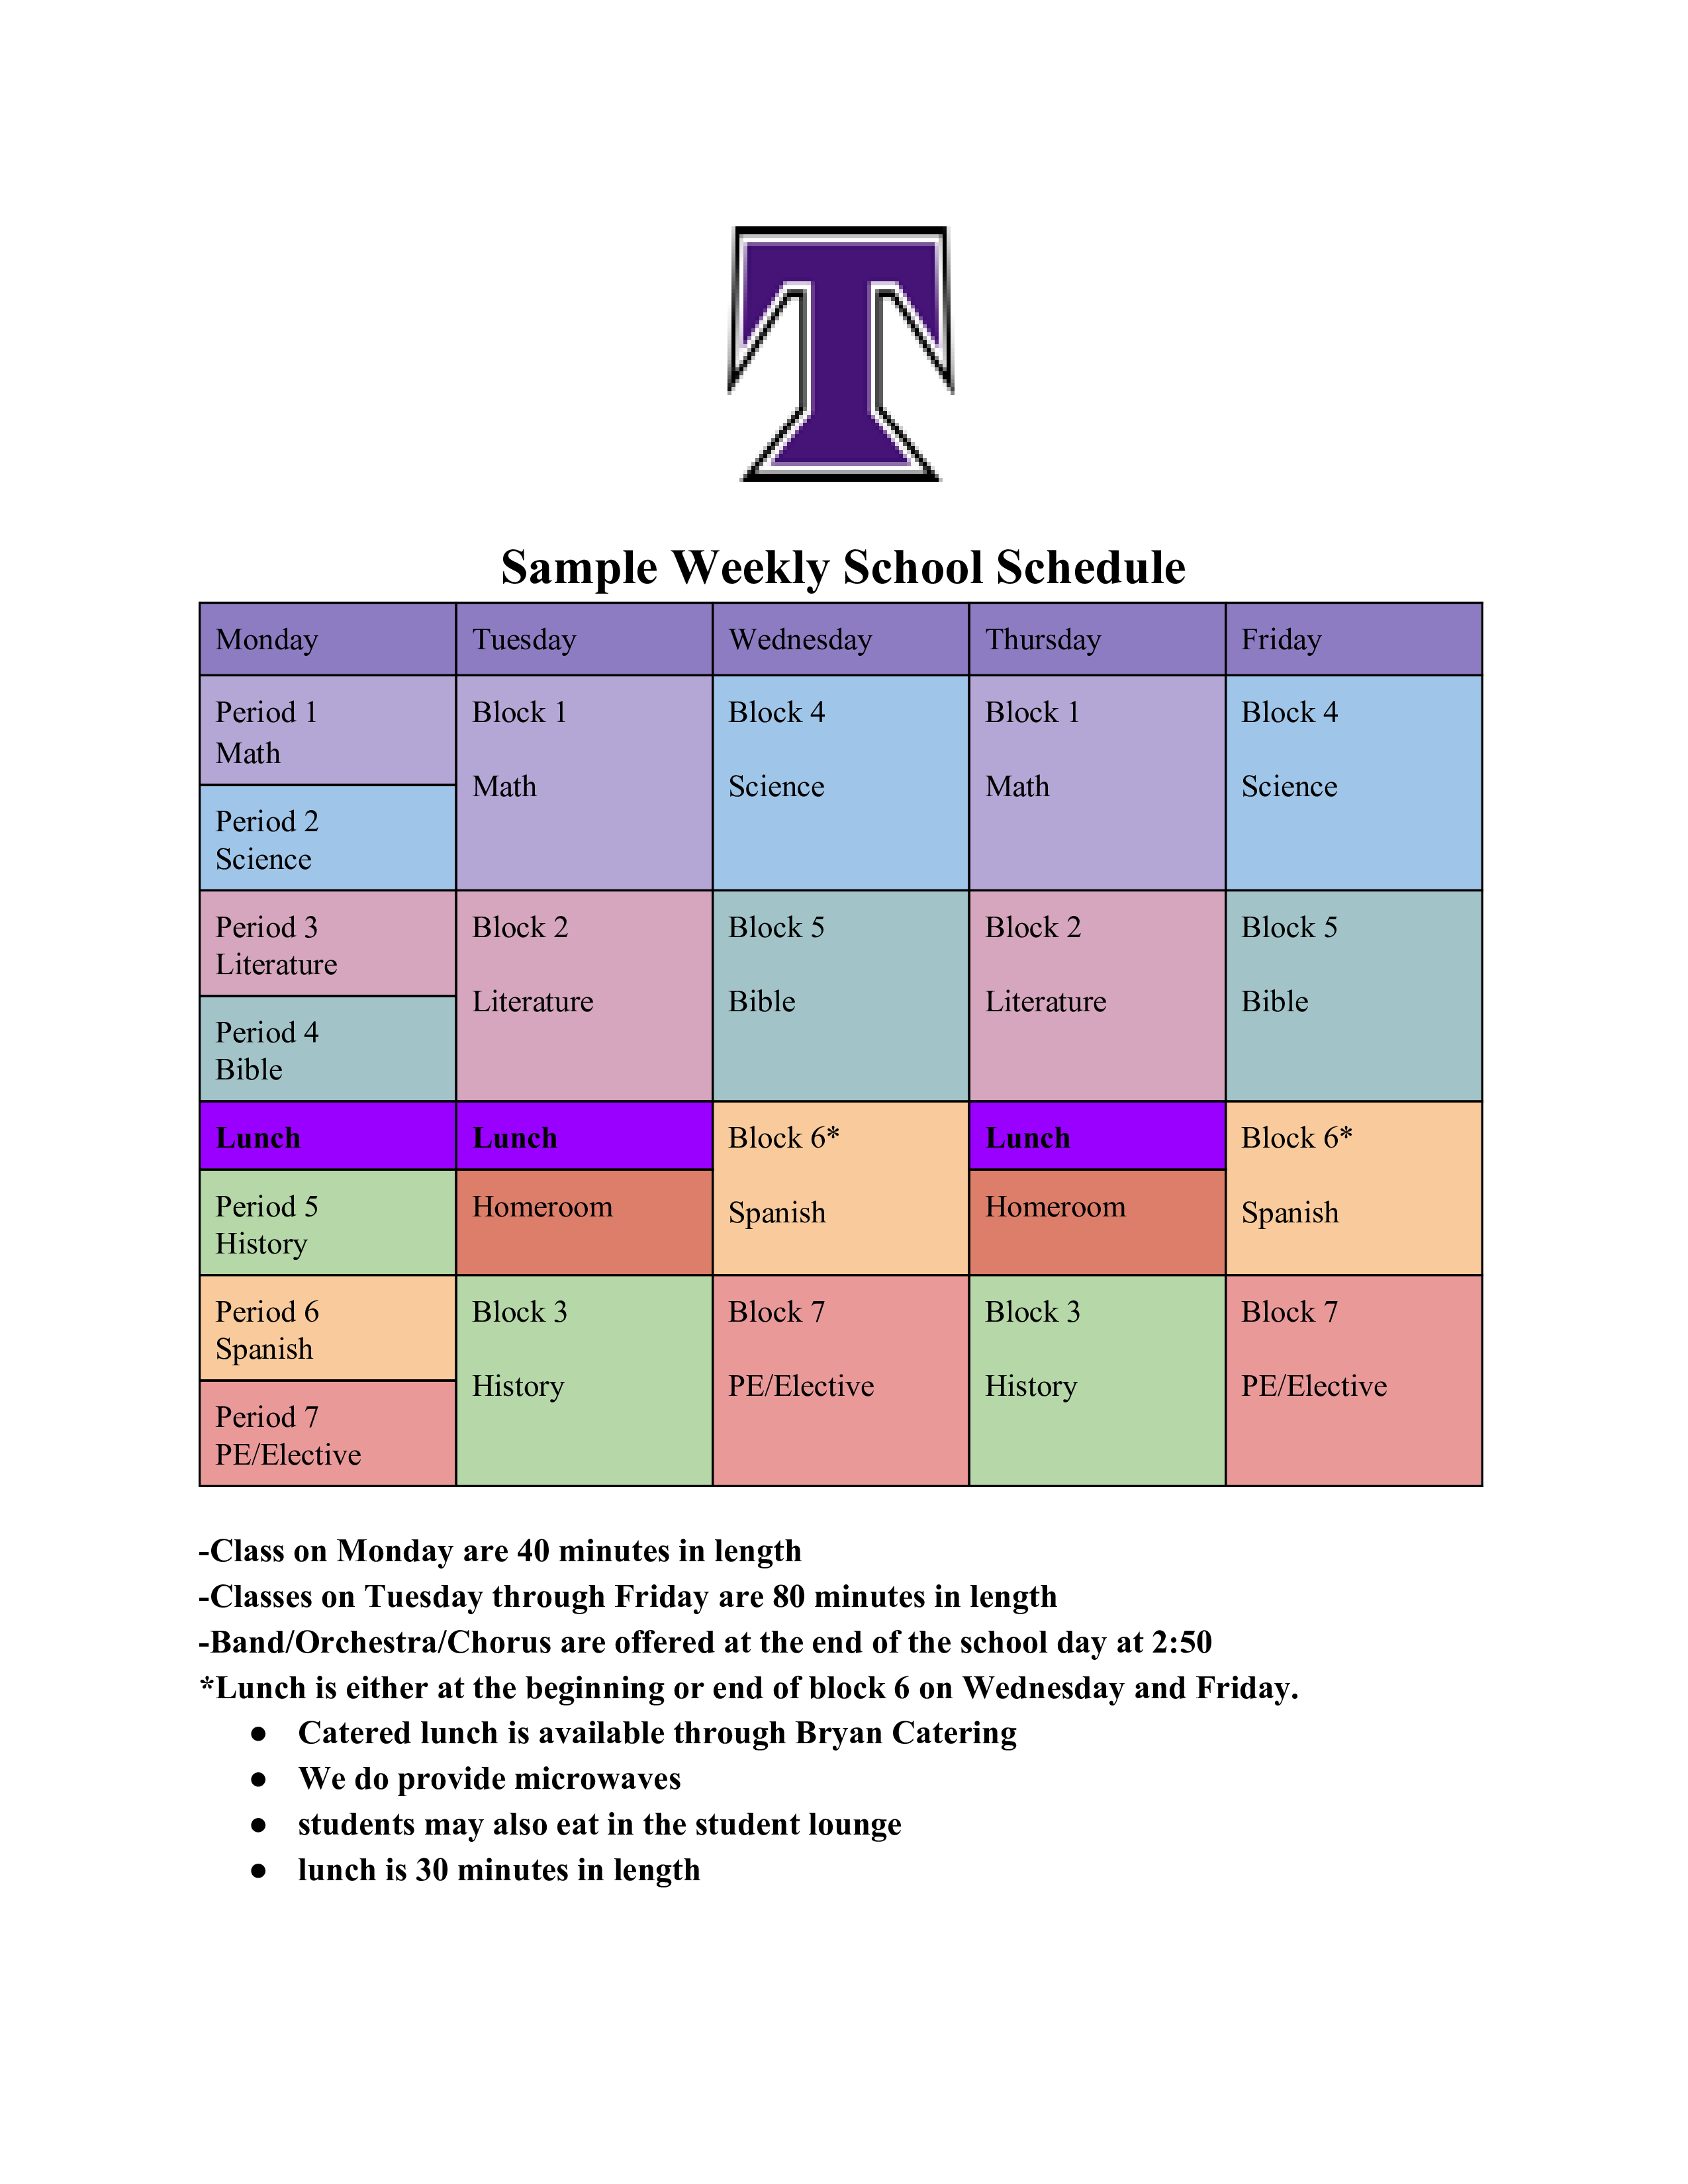 Weekly School Schedule main image